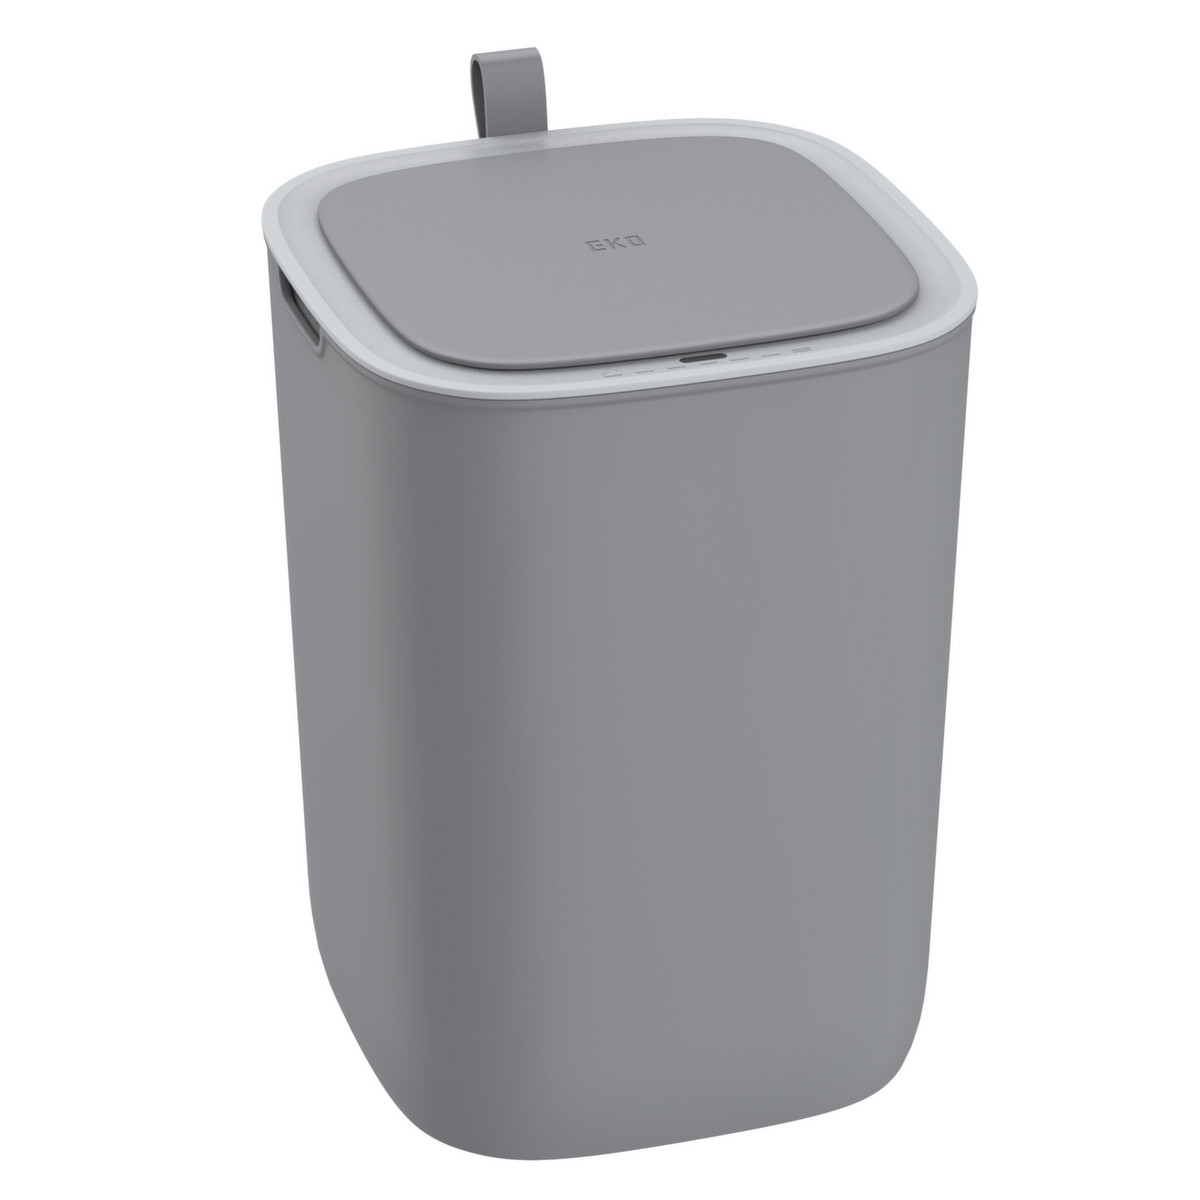 Sensor-Abfallbehälter EKO Morandi Smart aus Kunststoff, 12 l, grau Standard 1 ZOOM